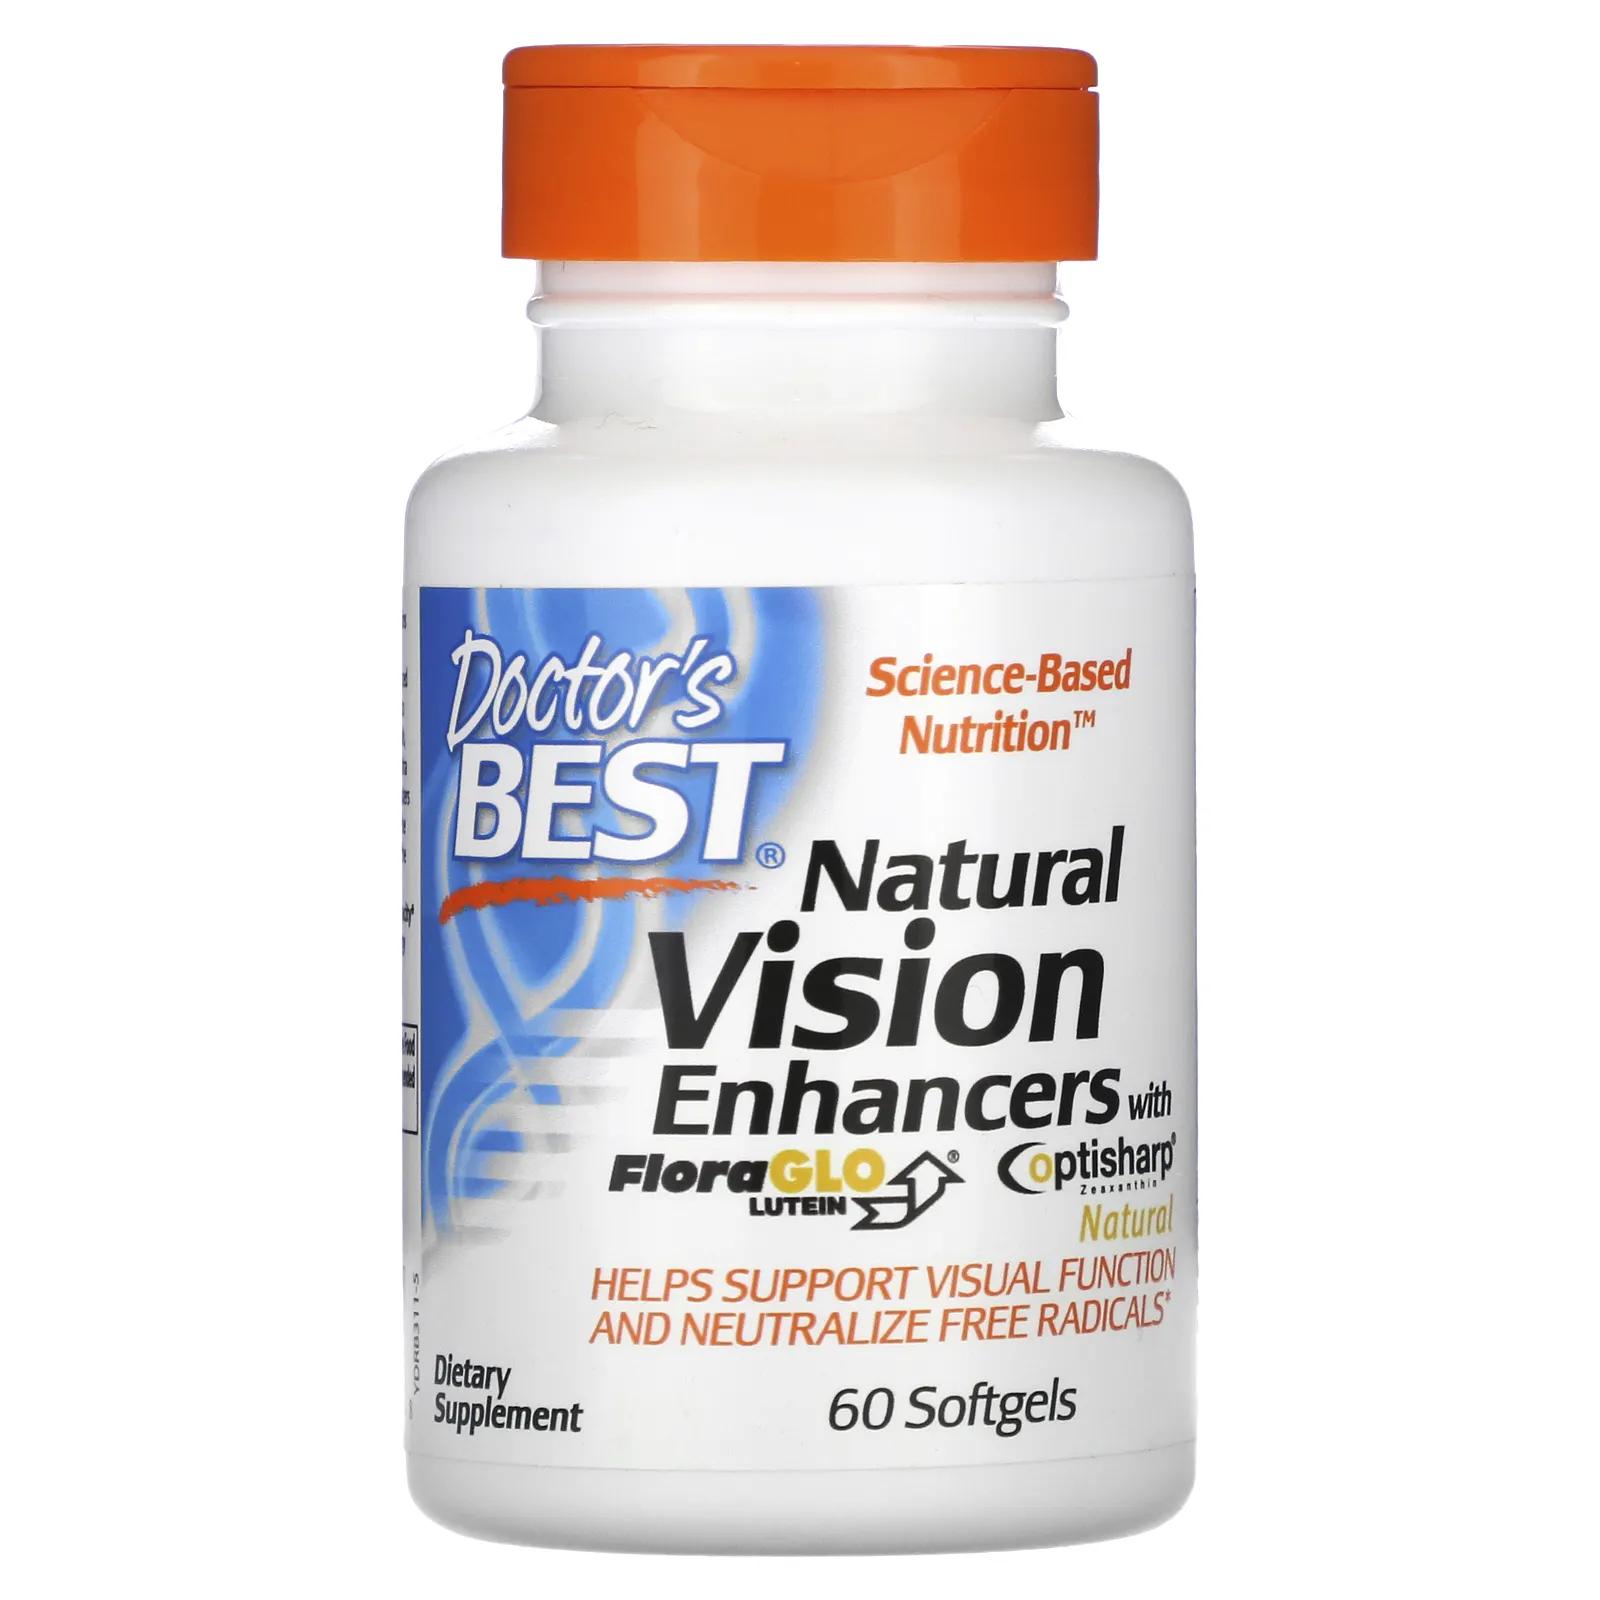 Doctor's Best Натуральное средство для улучшения зрения с лютеином FloraGlo 60 мягких таблеток